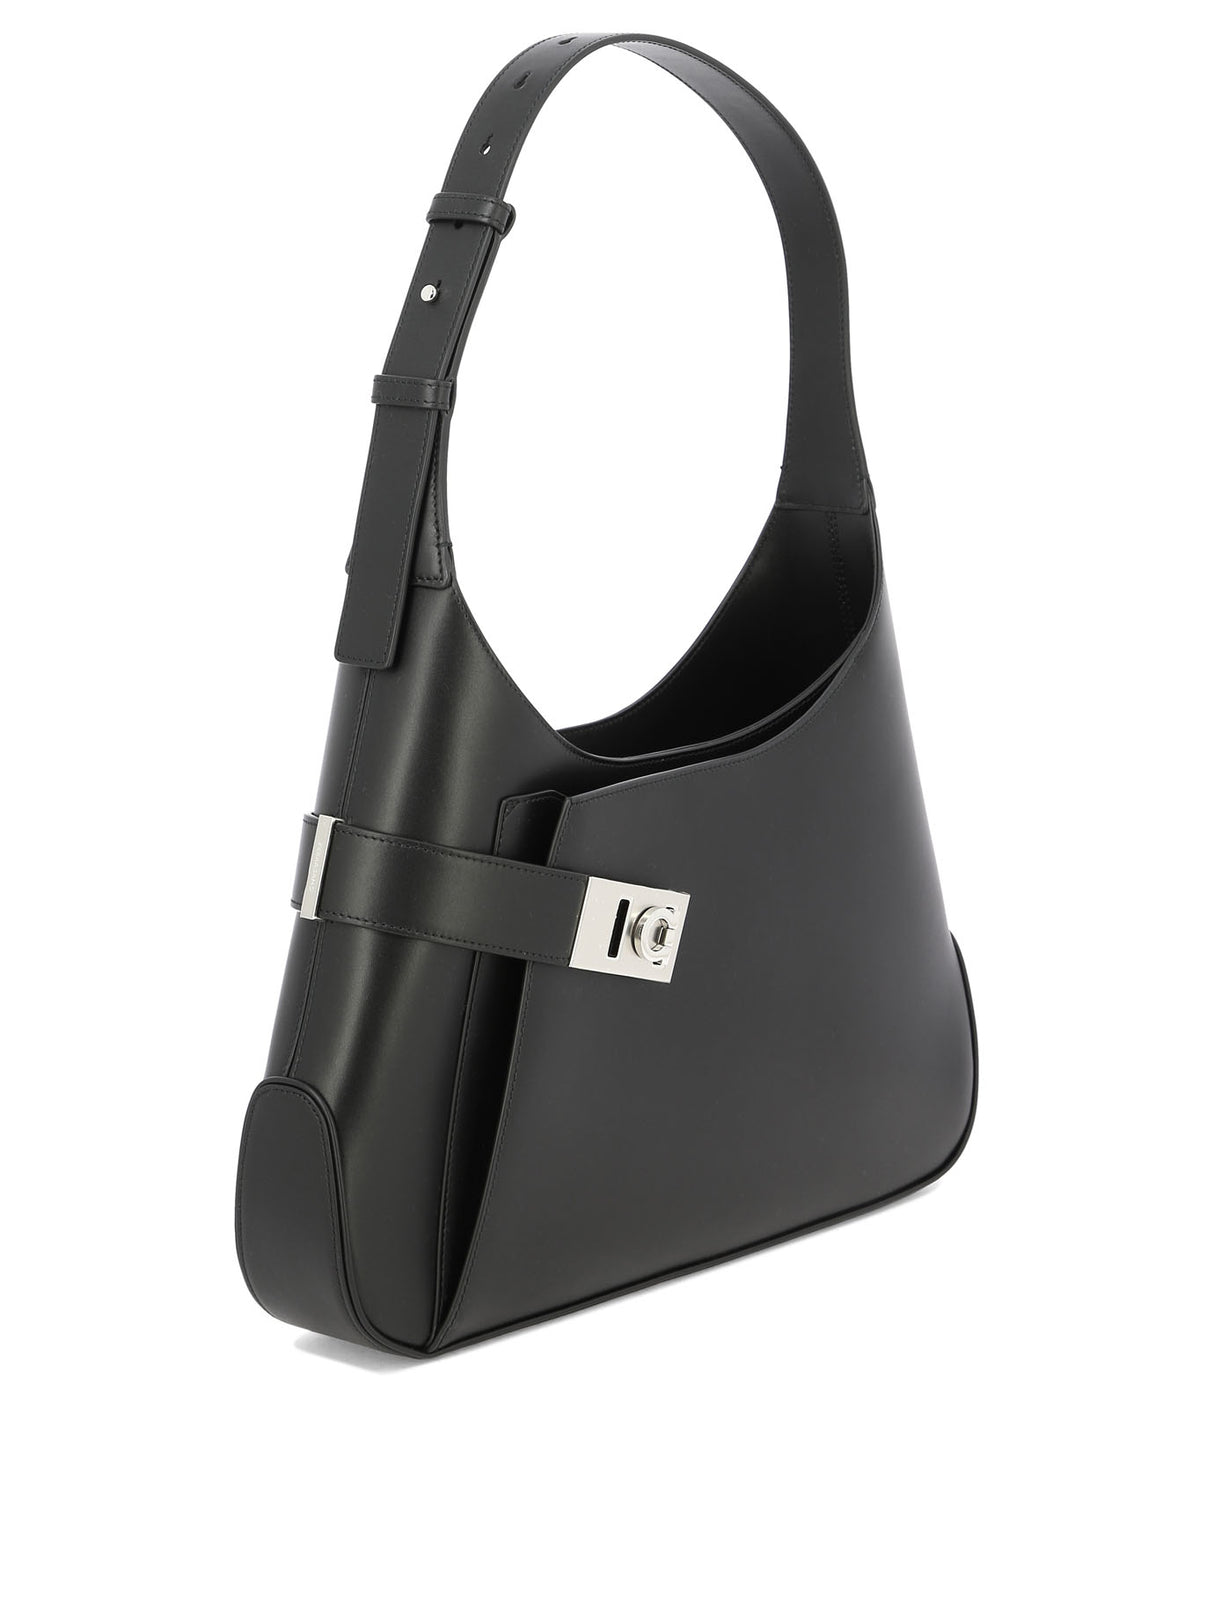 Túi xách đeo vai dơi độc đáo màu đen dành cho nữ - Bộ sưu tập SS24